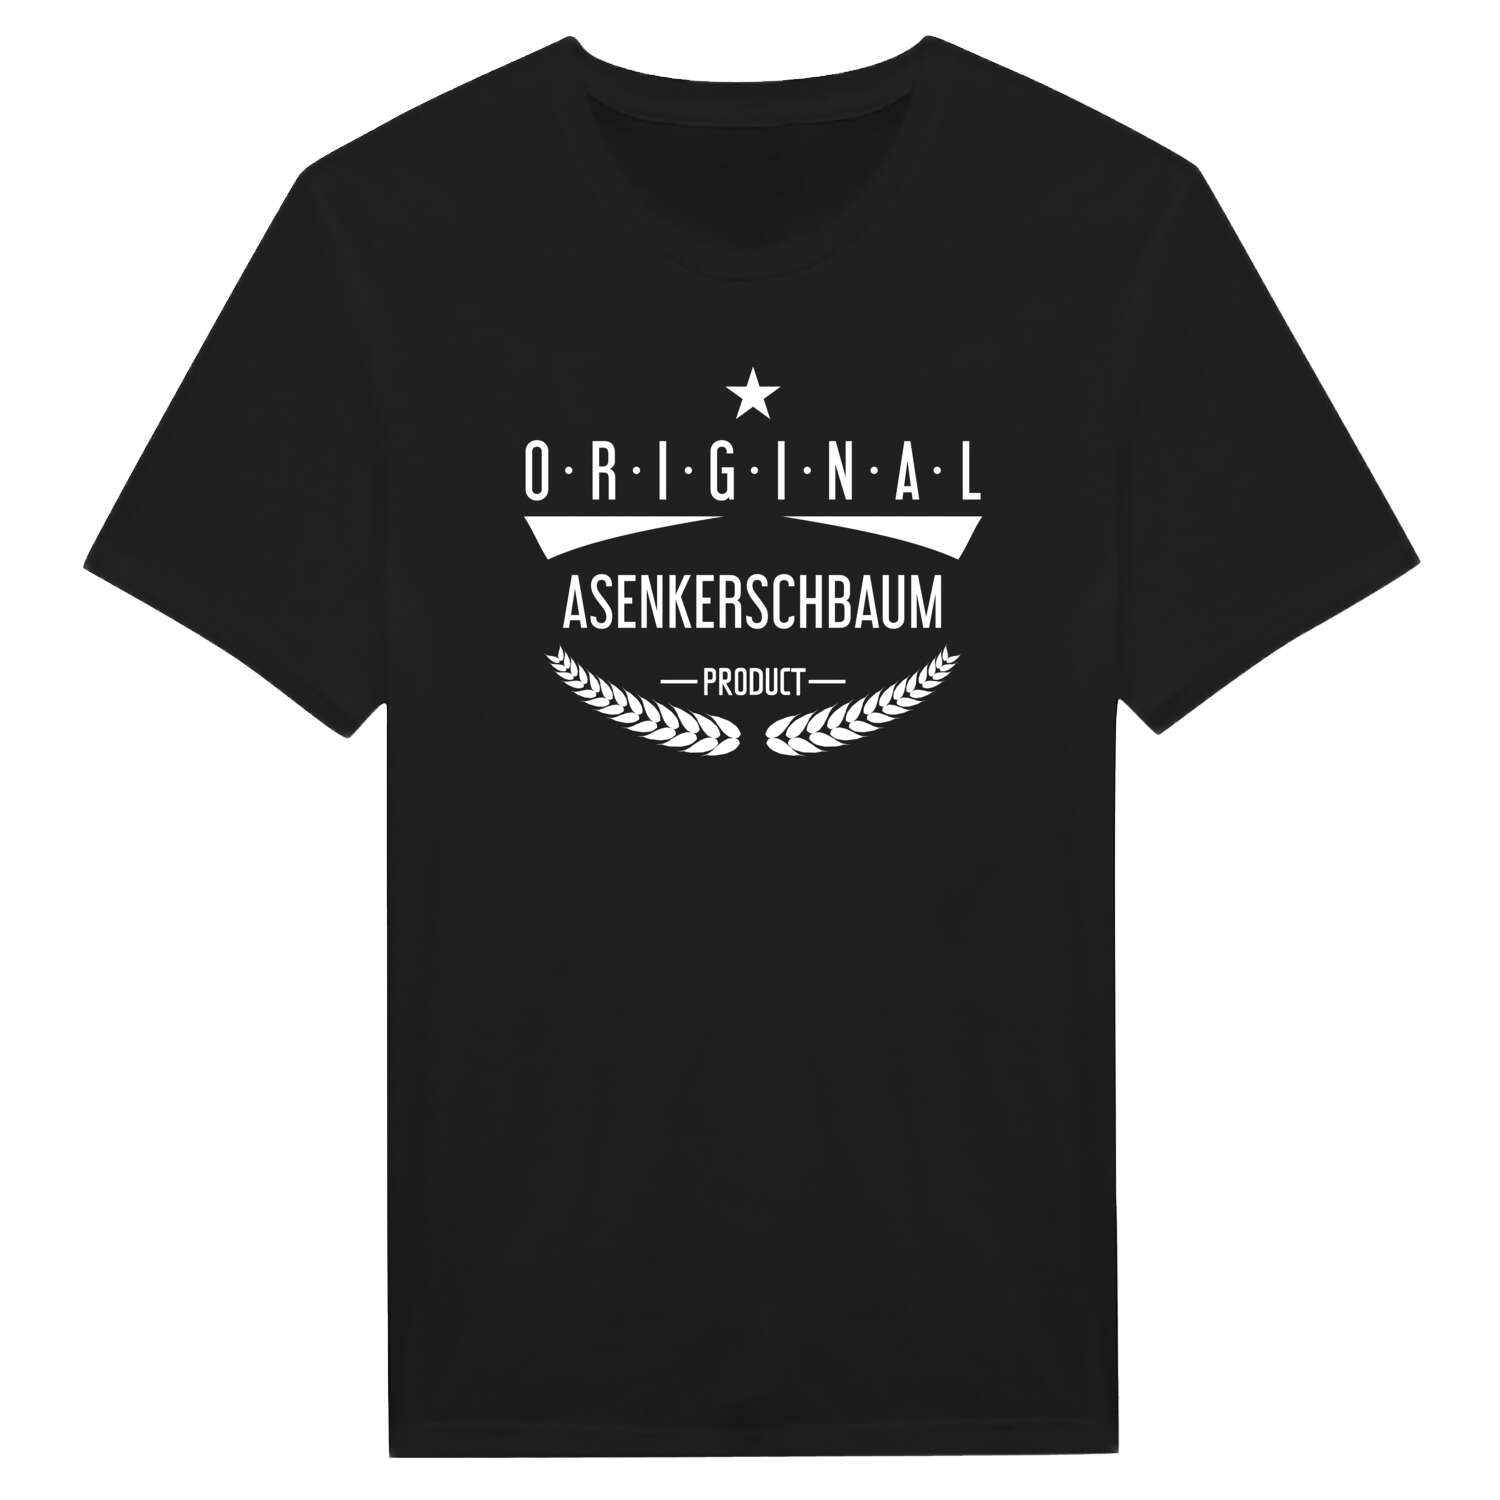 Asenkerschbaum T-Shirt »Original Product«